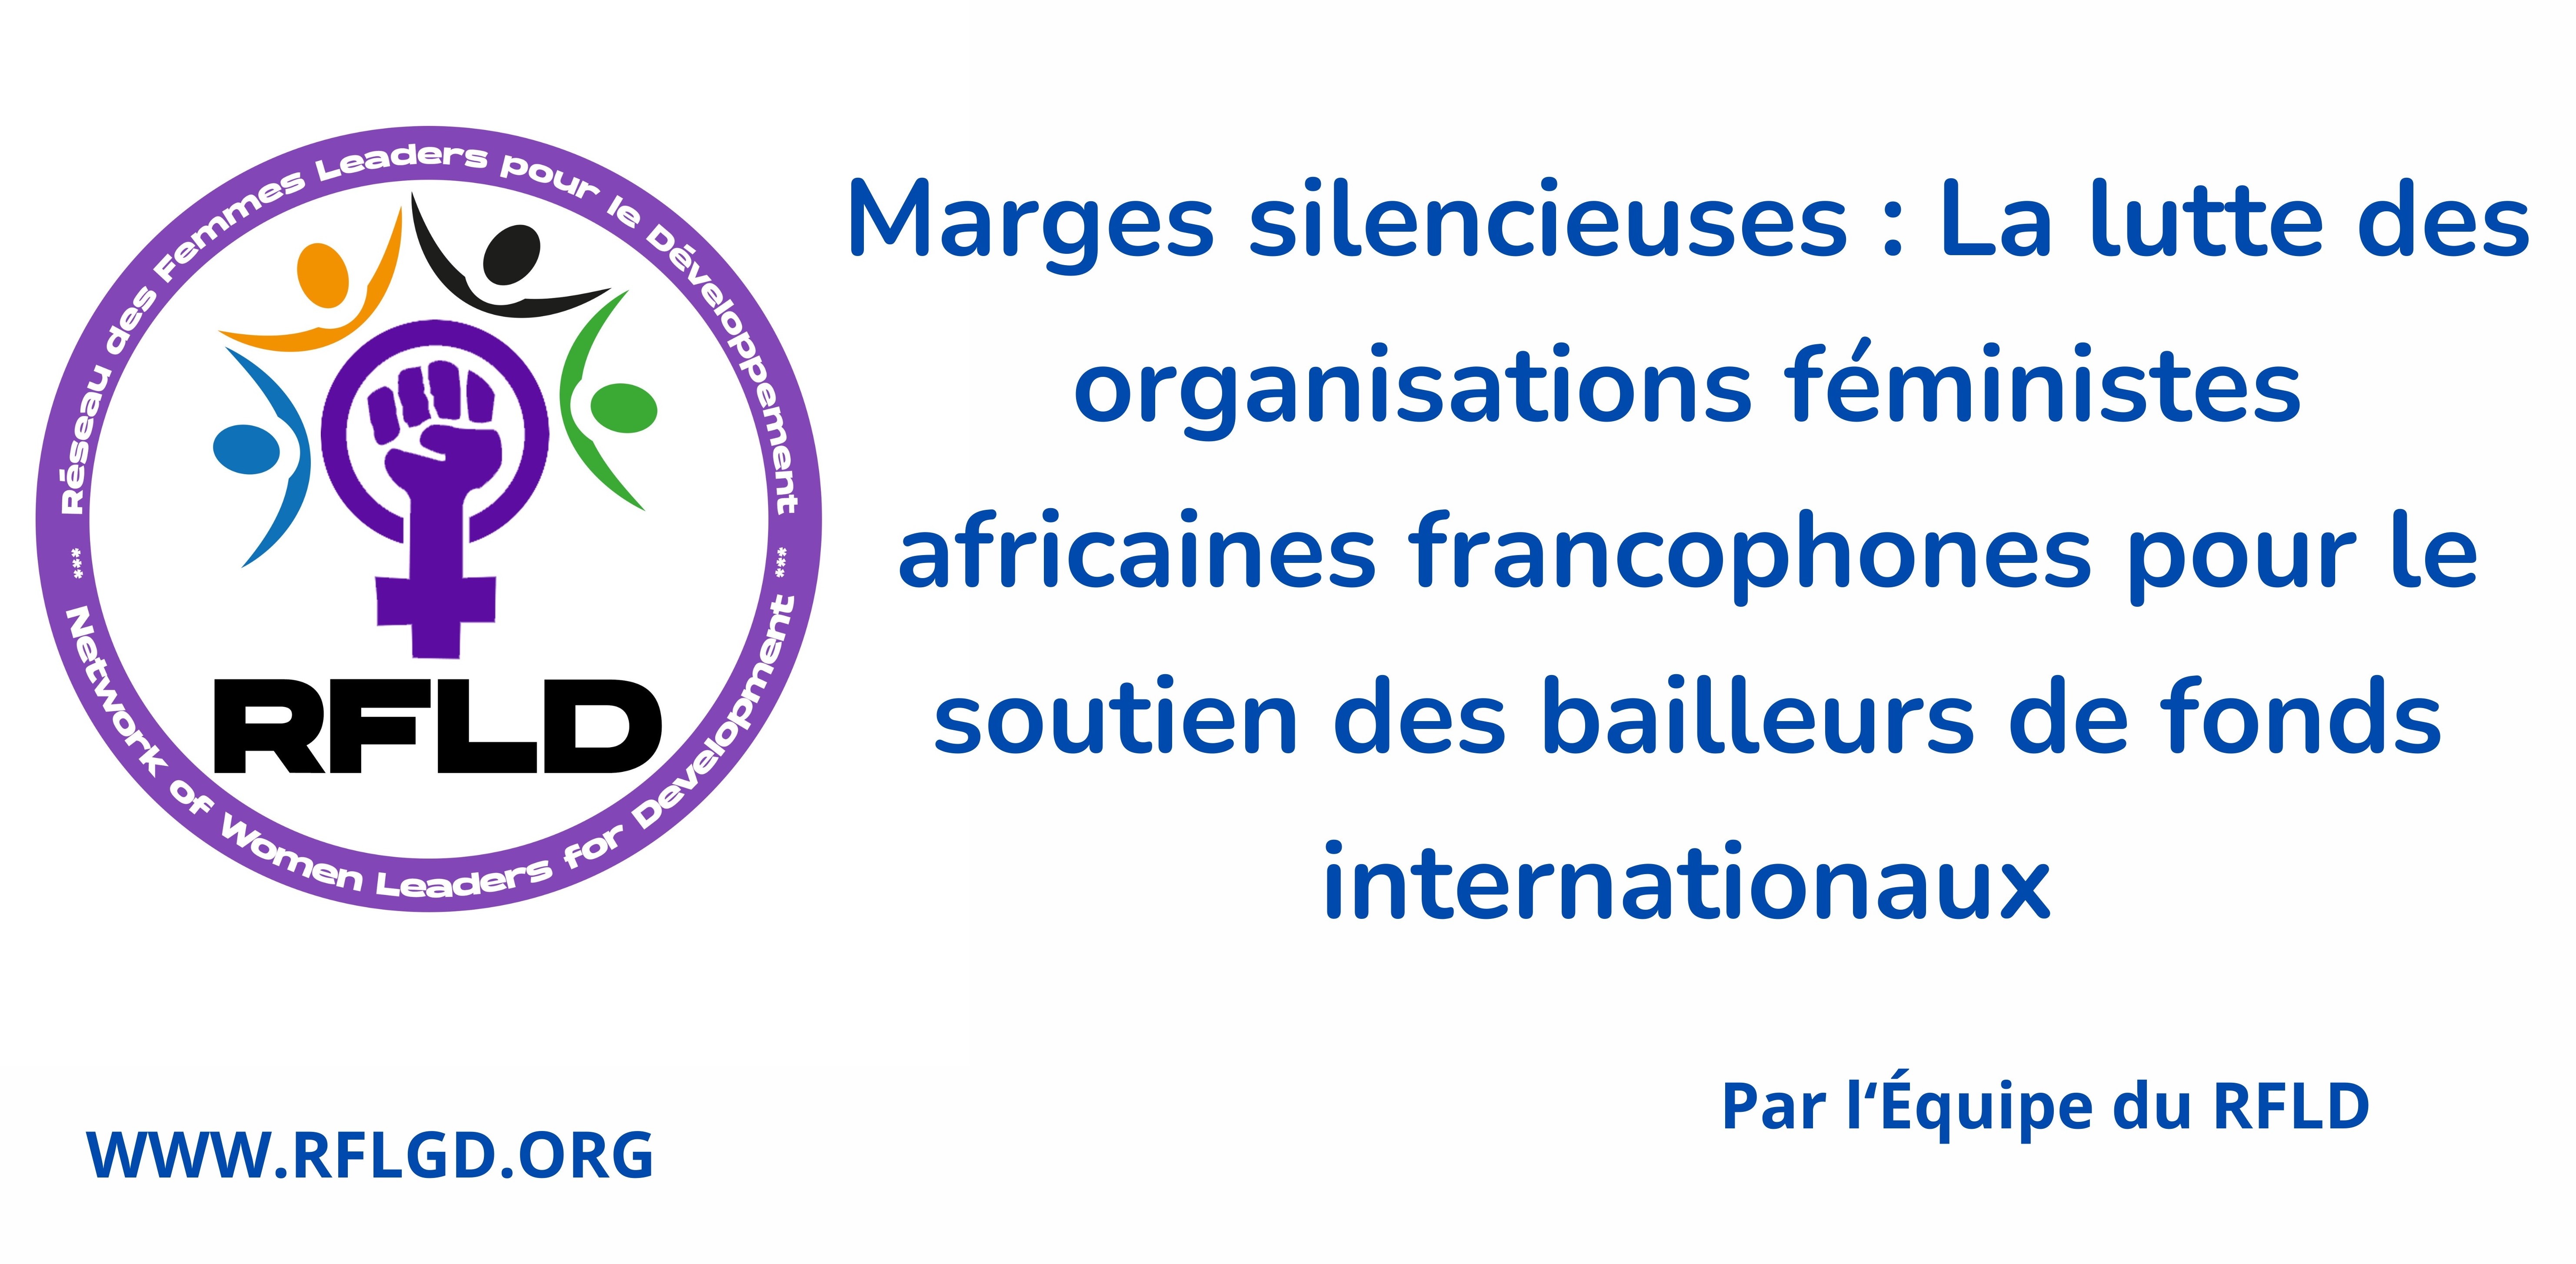 Marges silencieuses : La lutte des organisations féministes africaines francophones pour le soutien des bailleurs de fonds internationaux